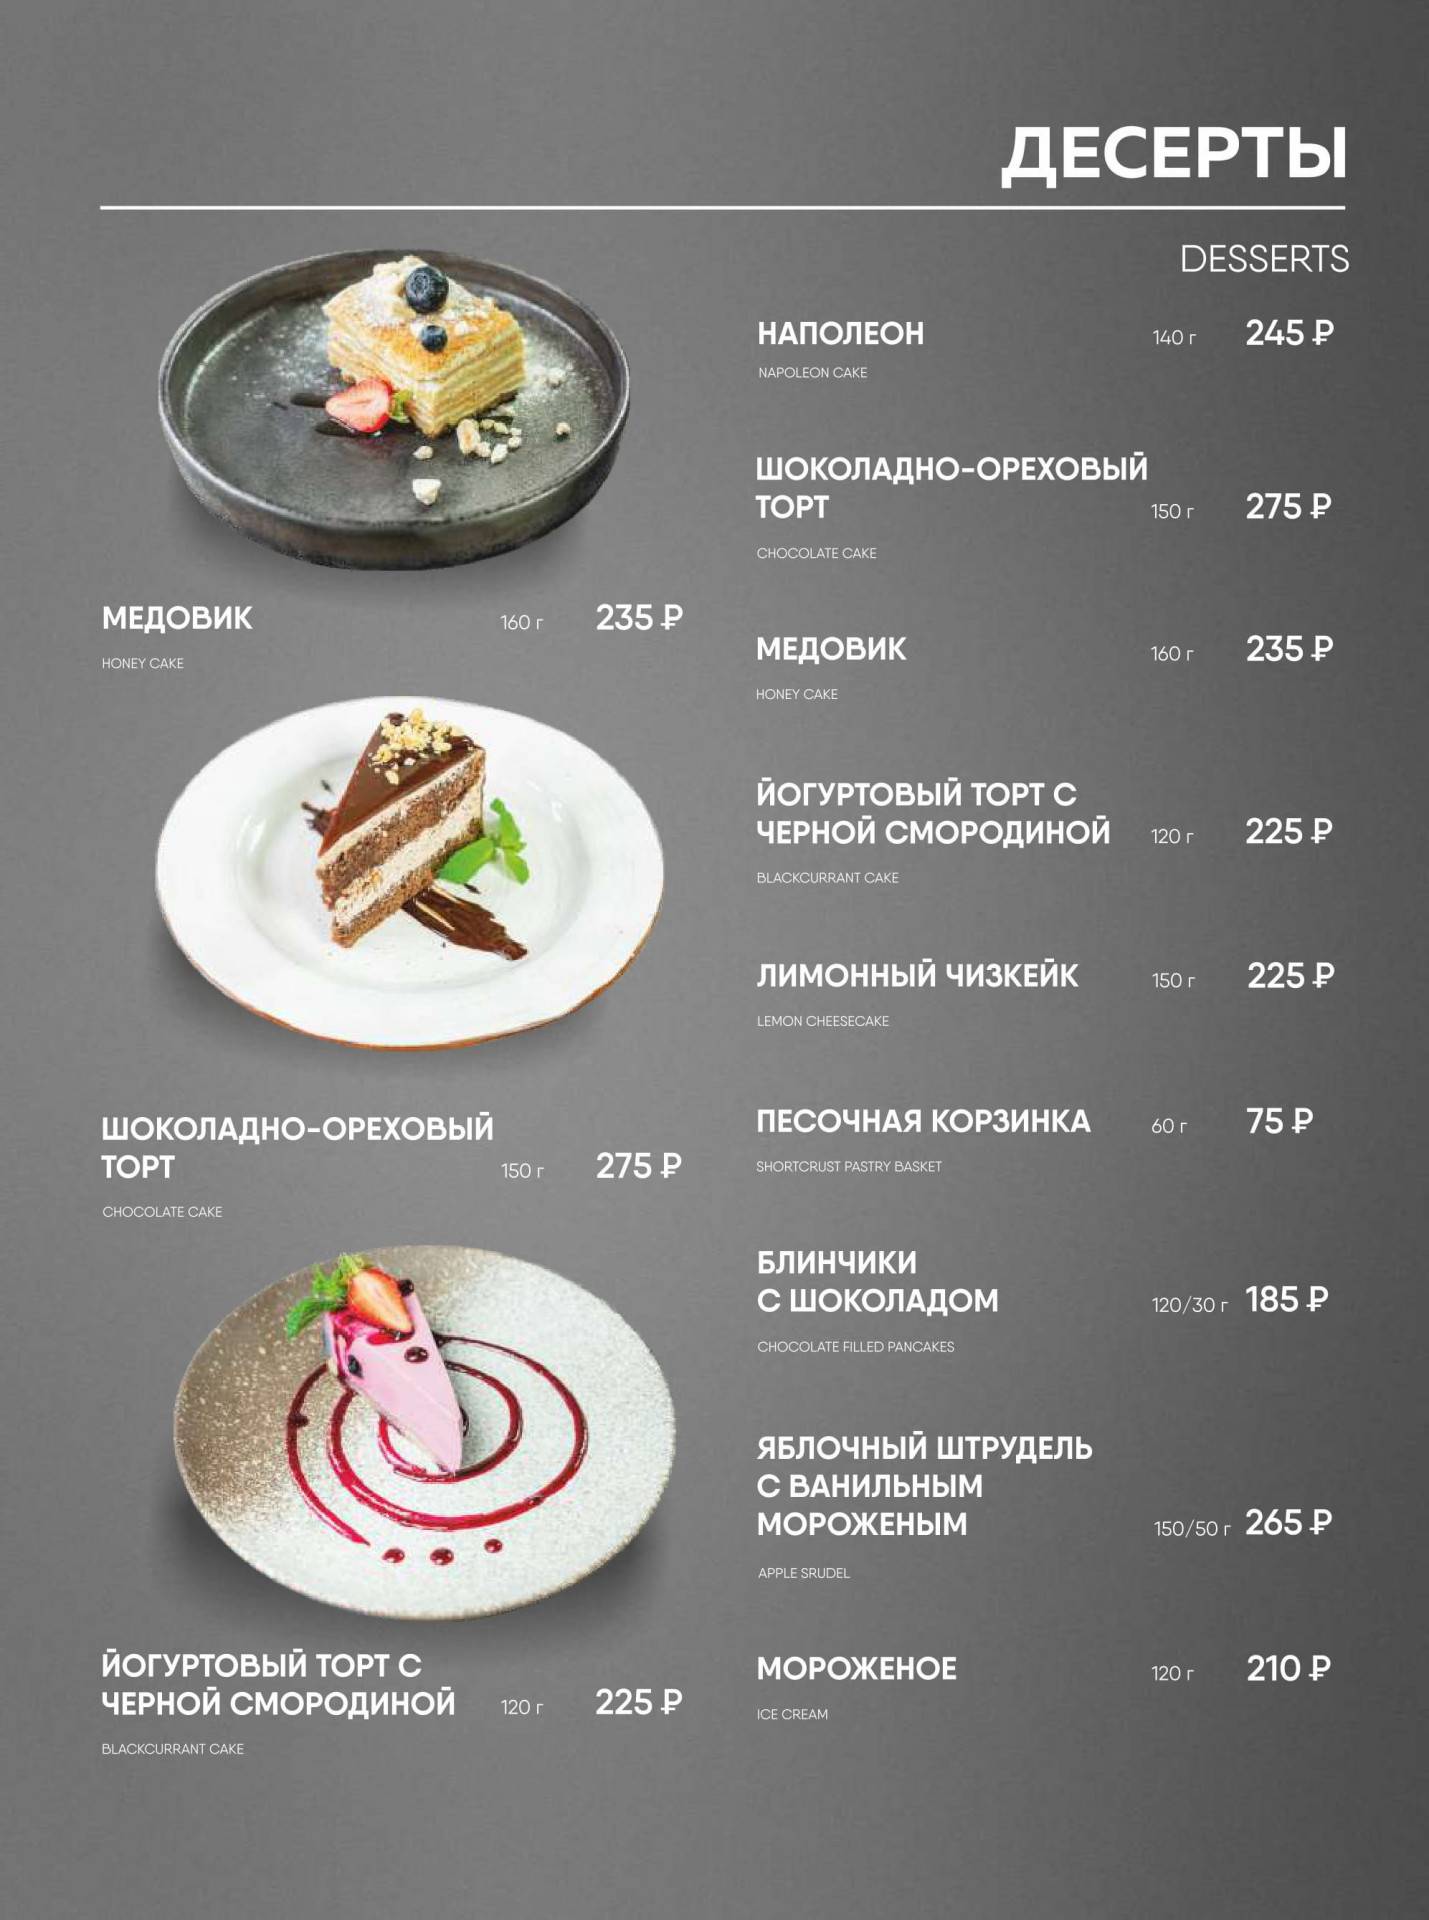 Ресторан дача меню и цены. Счастье ресторан Санкт-Петербург меню. Кафе дача Истра меню. Счастье меню Завтраки. Ресторан счастье меню Завтраки.